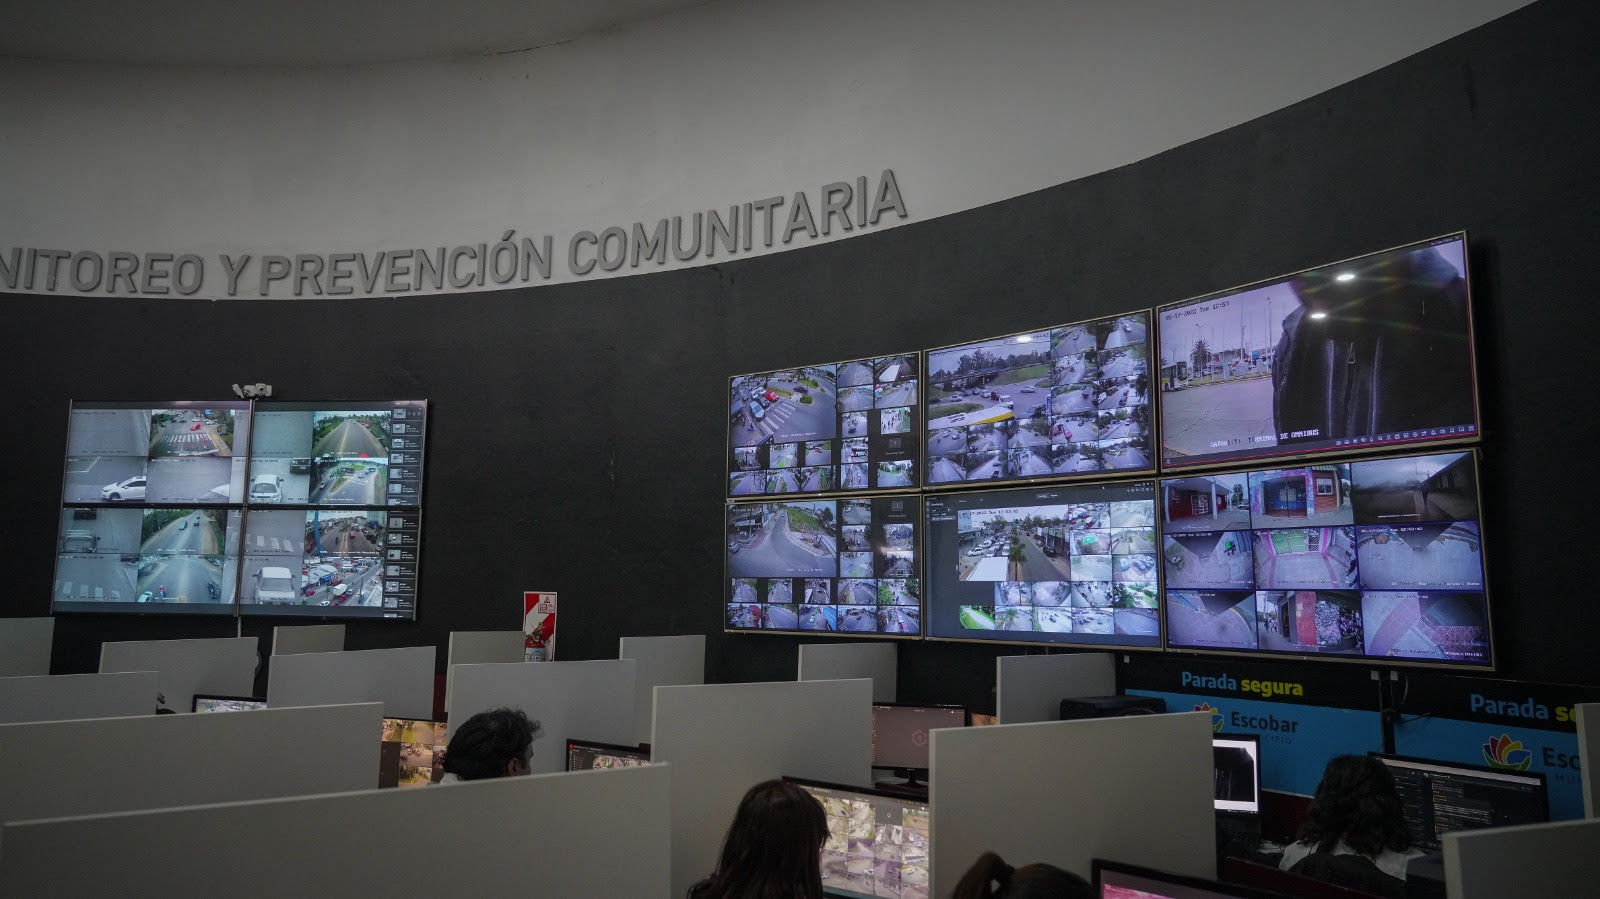 Escobar: Con una nueva obra de ampliación, el Centro de Monitoreo cuadruplica su tamaño inicial